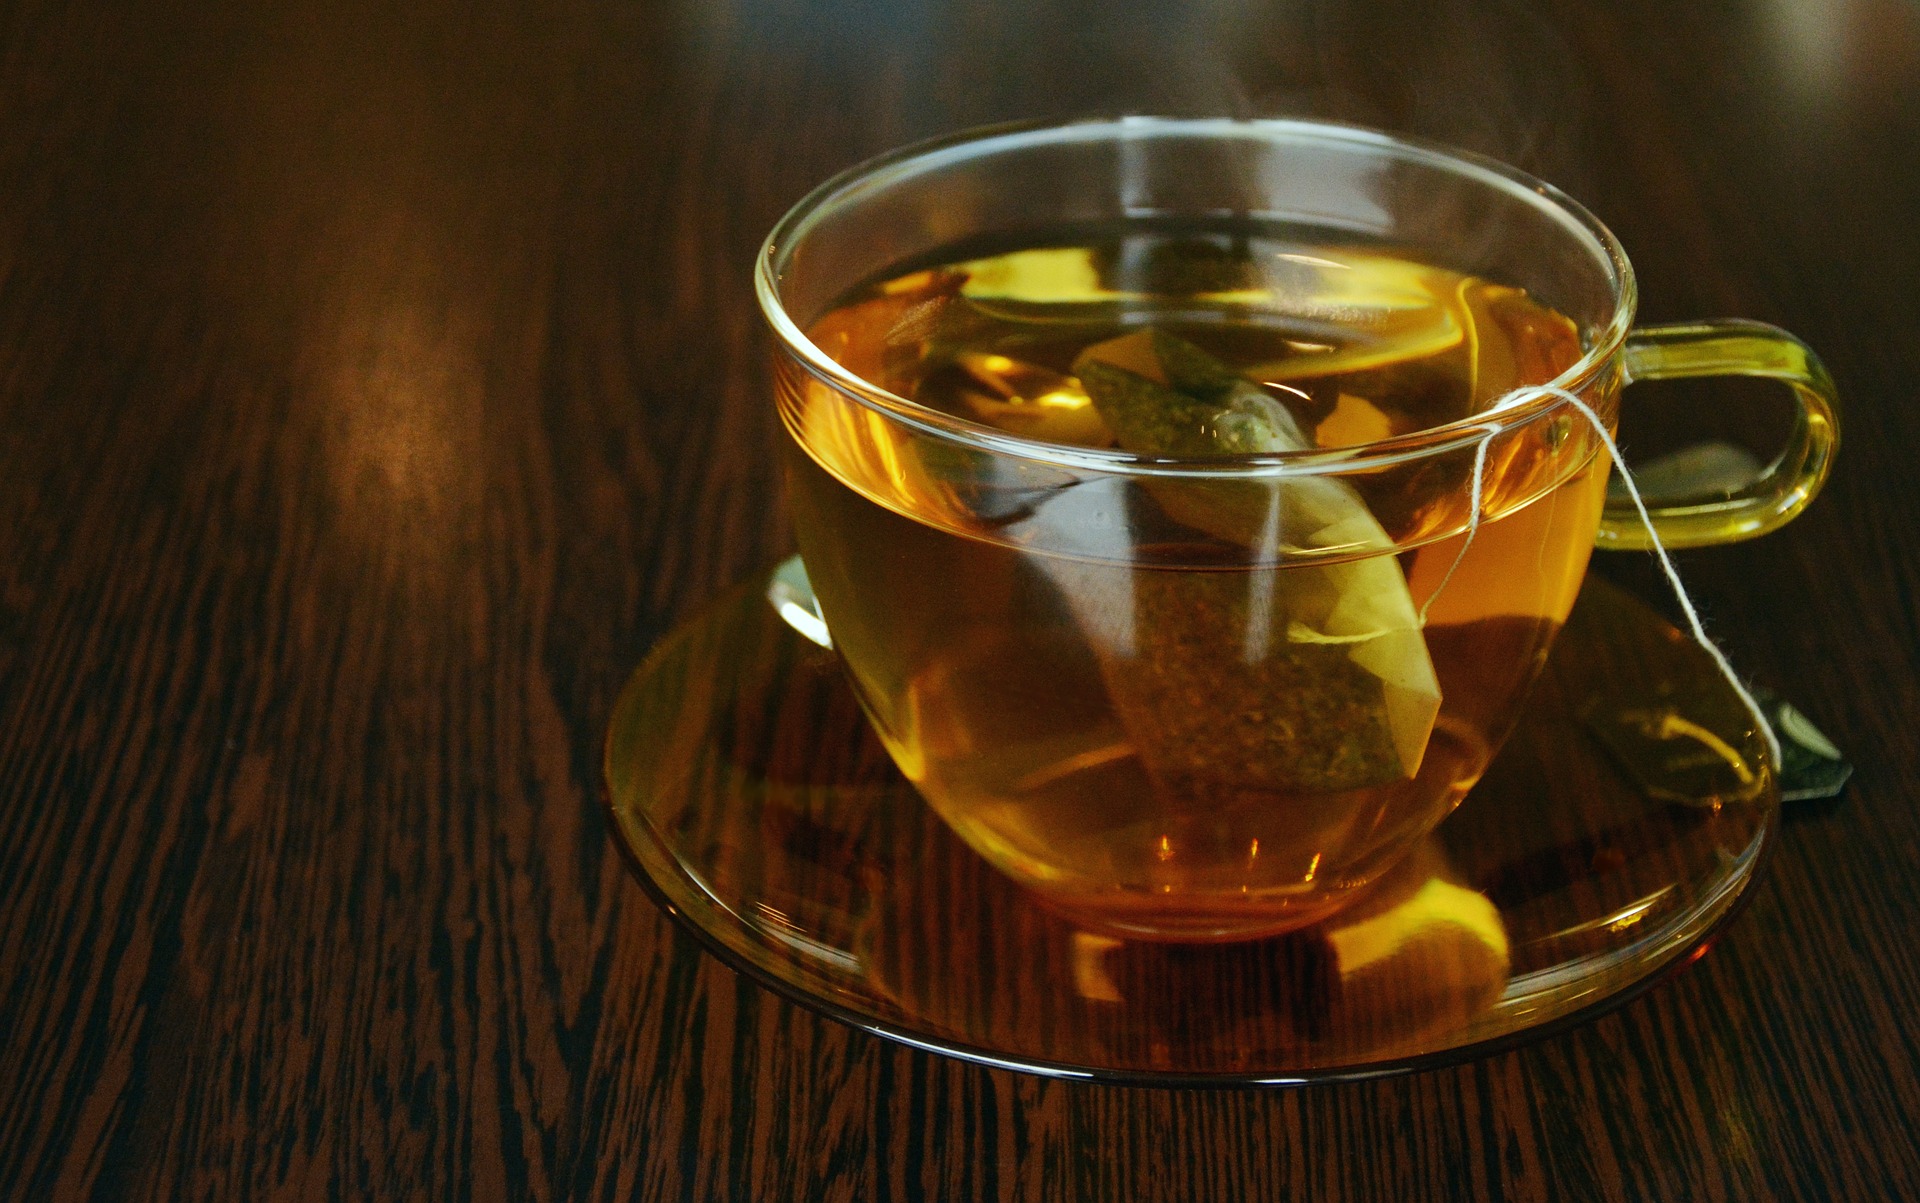 Polacy kochają herbatę – 80% pije ją codziennie